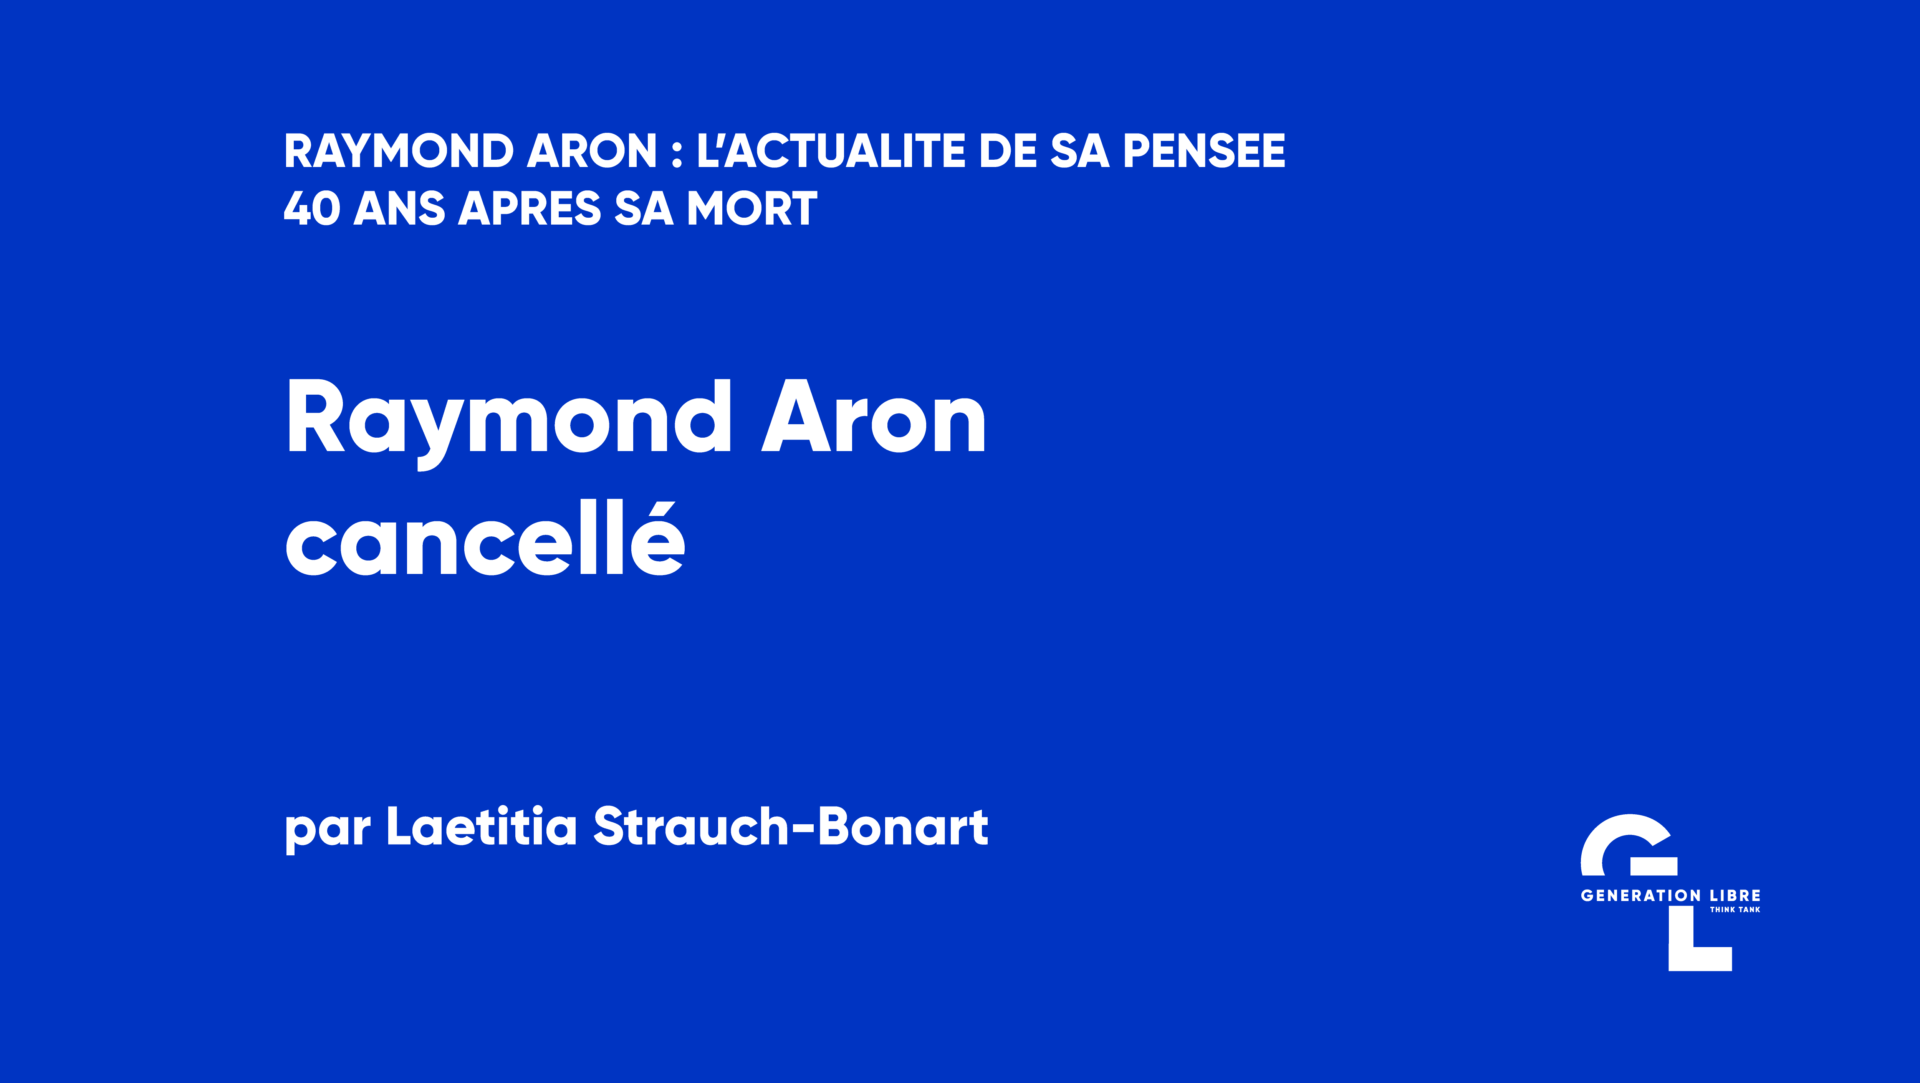 Raymond Aron cancellé